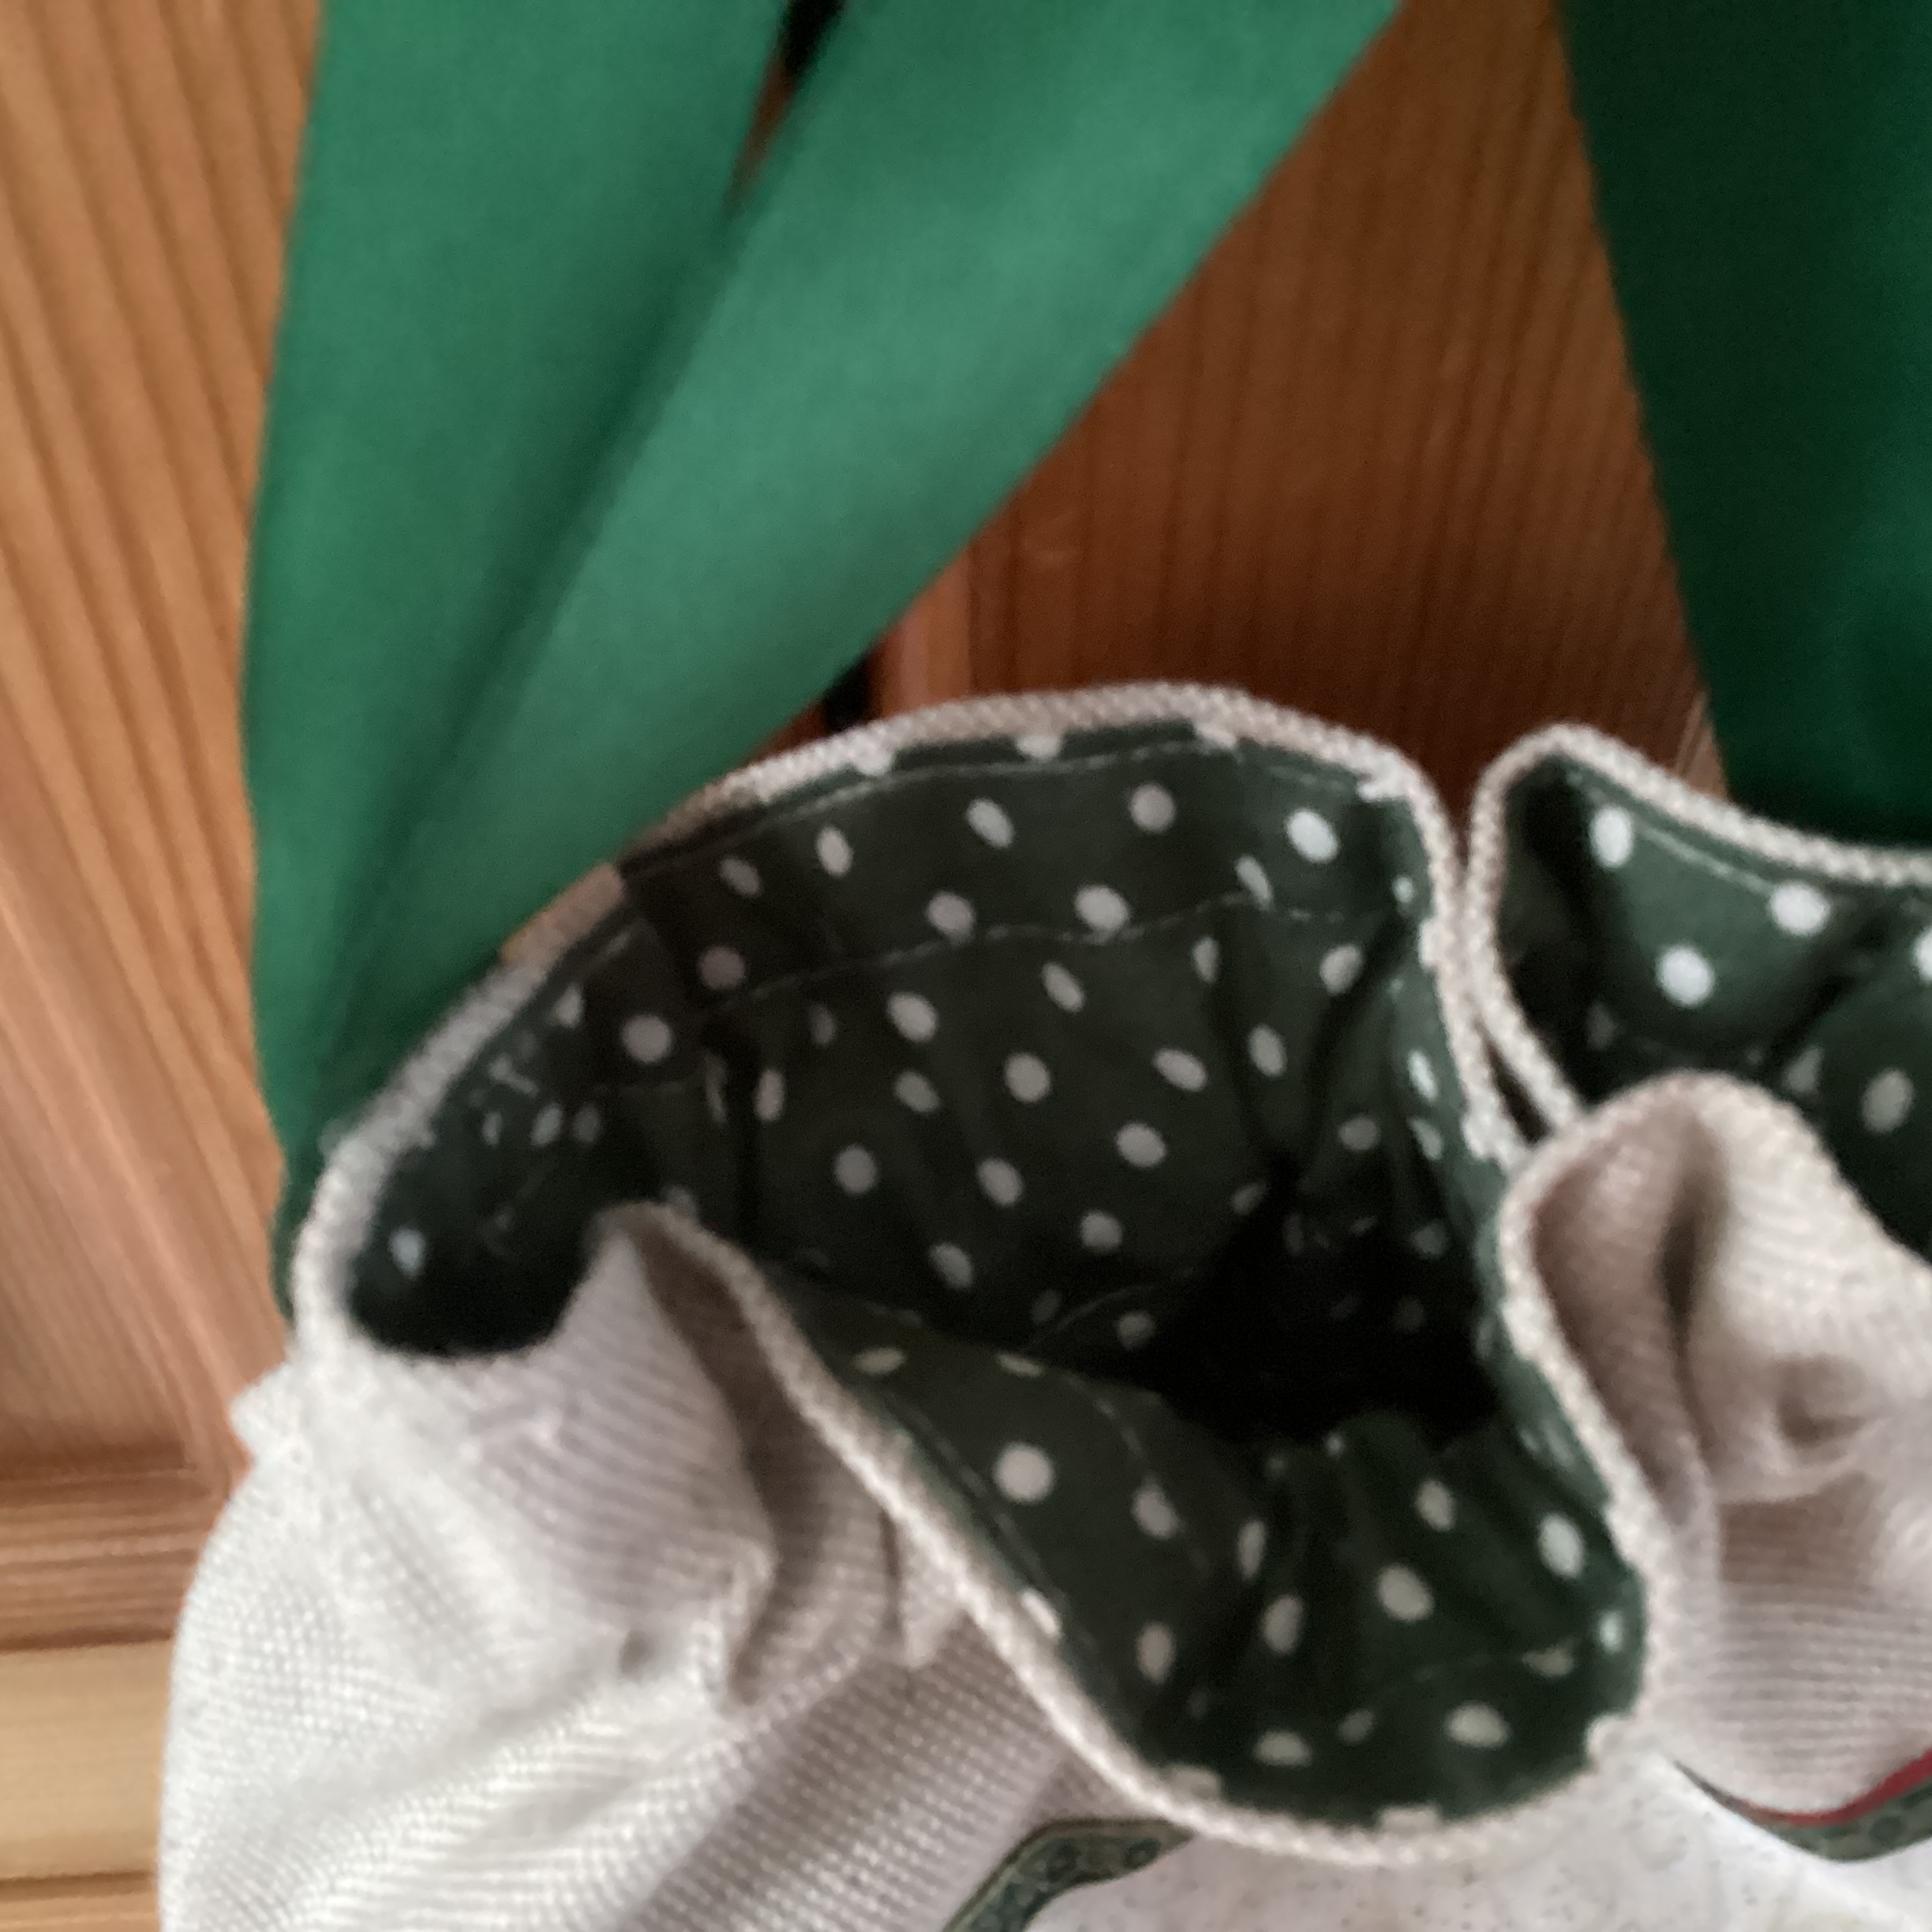 Christmas Gift Bag - beige linen with bird on a fir branch print